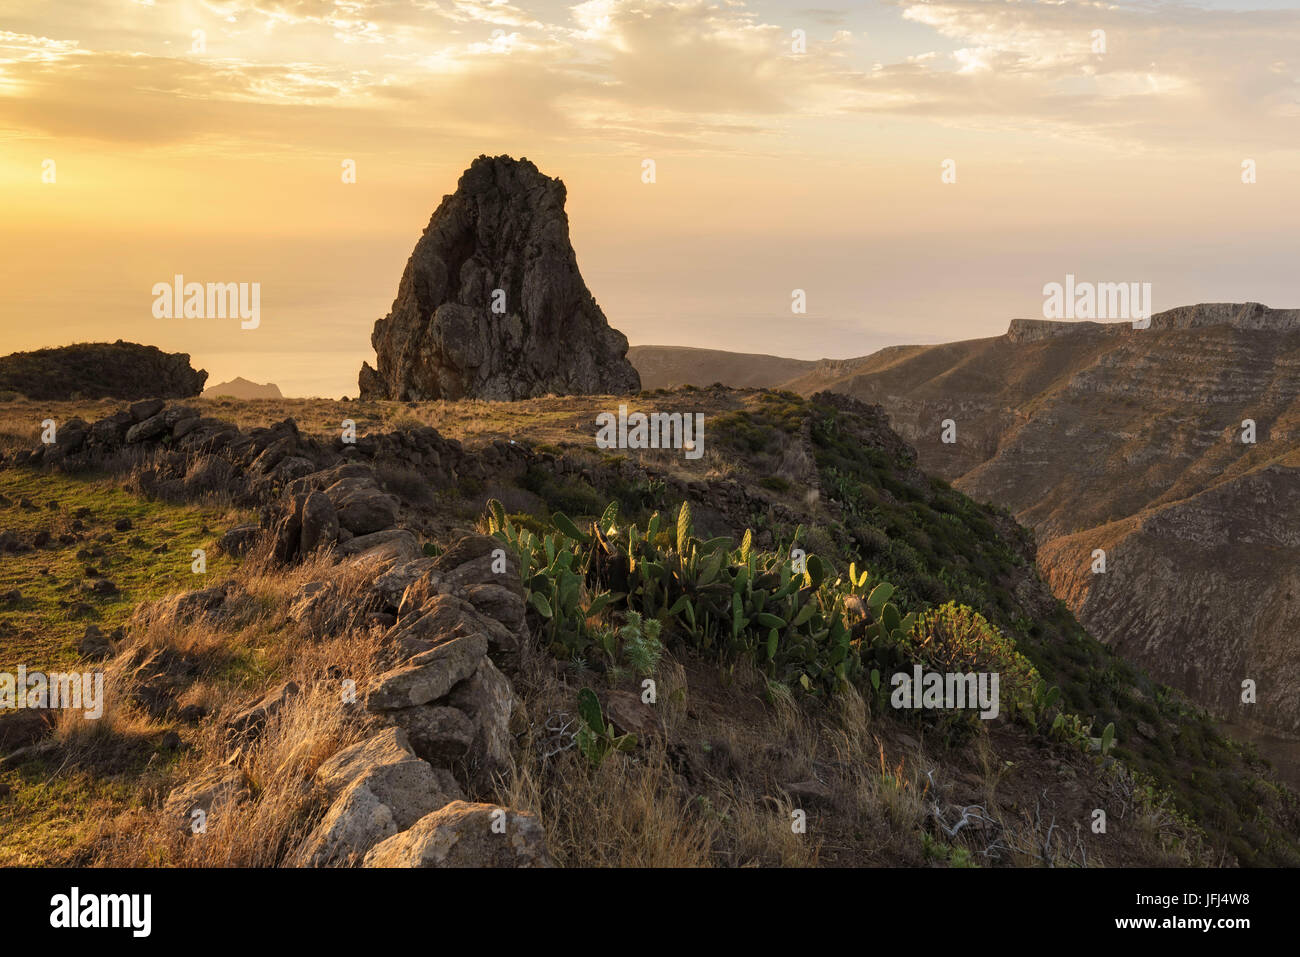 Roque au lever du soleil, la Gomera, Canary Islands, Spain Banque D'Images